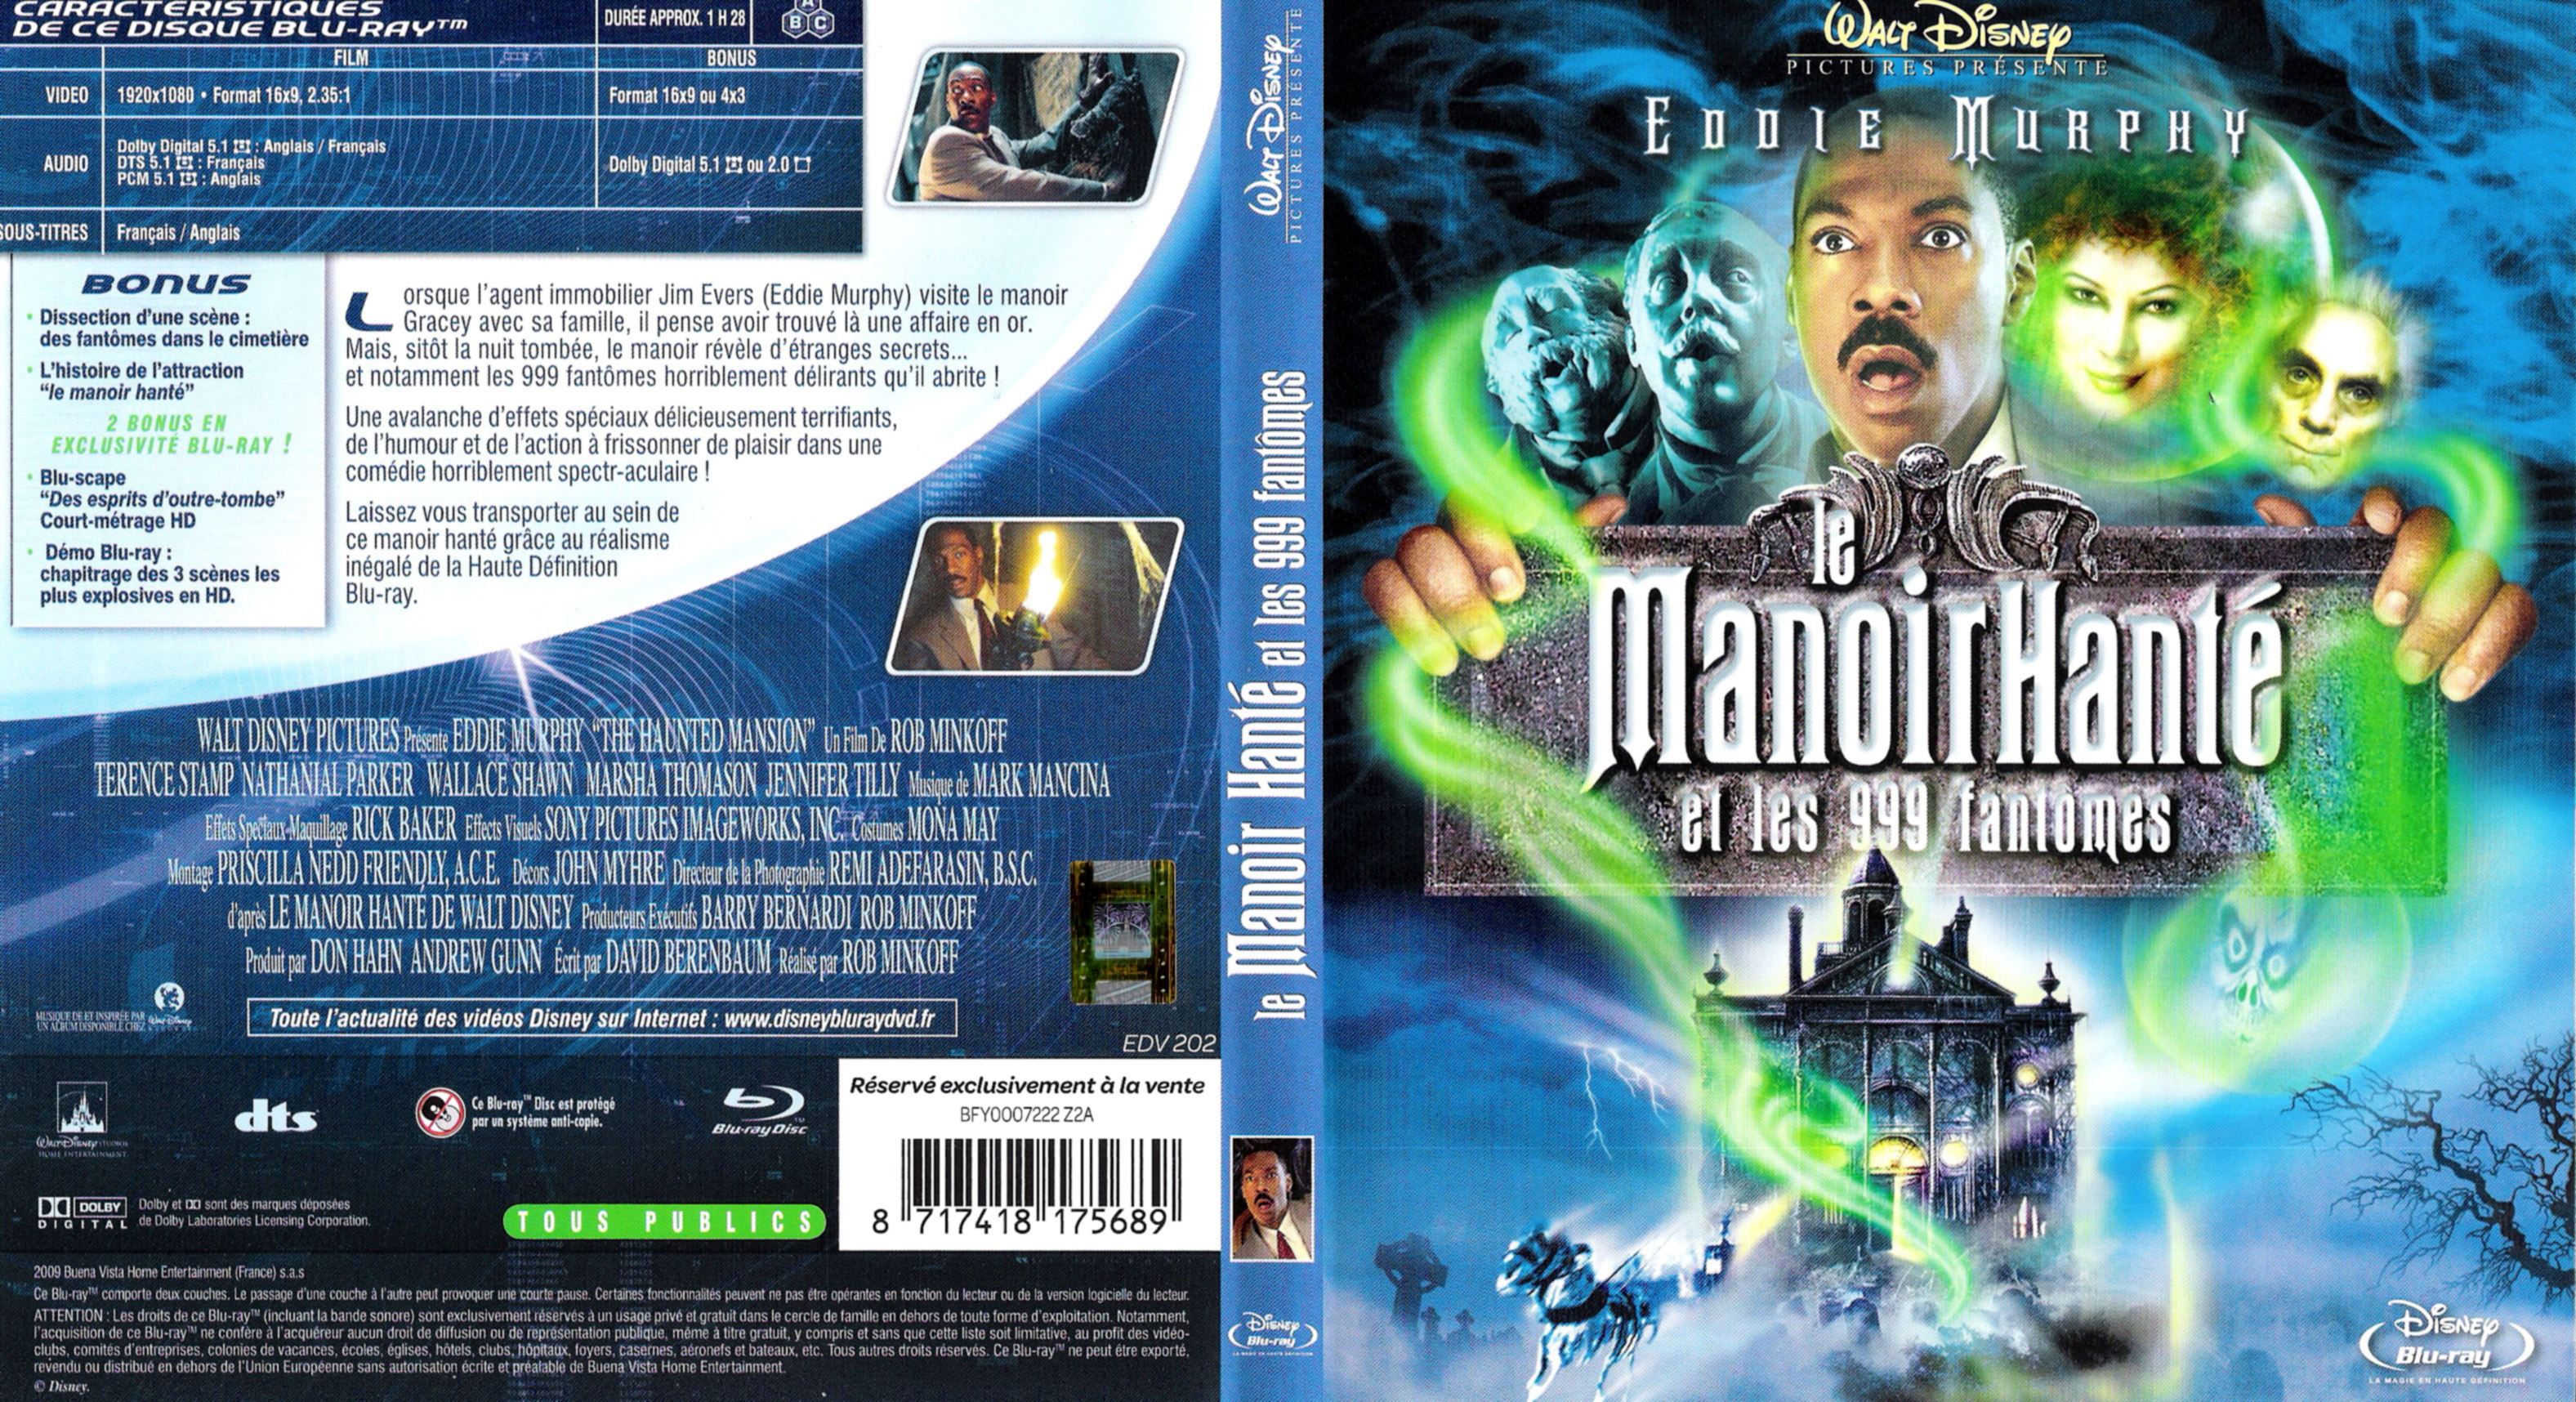 Jaquette DVD Le manoir hant et les 999 fantomes (BLU-RAY)